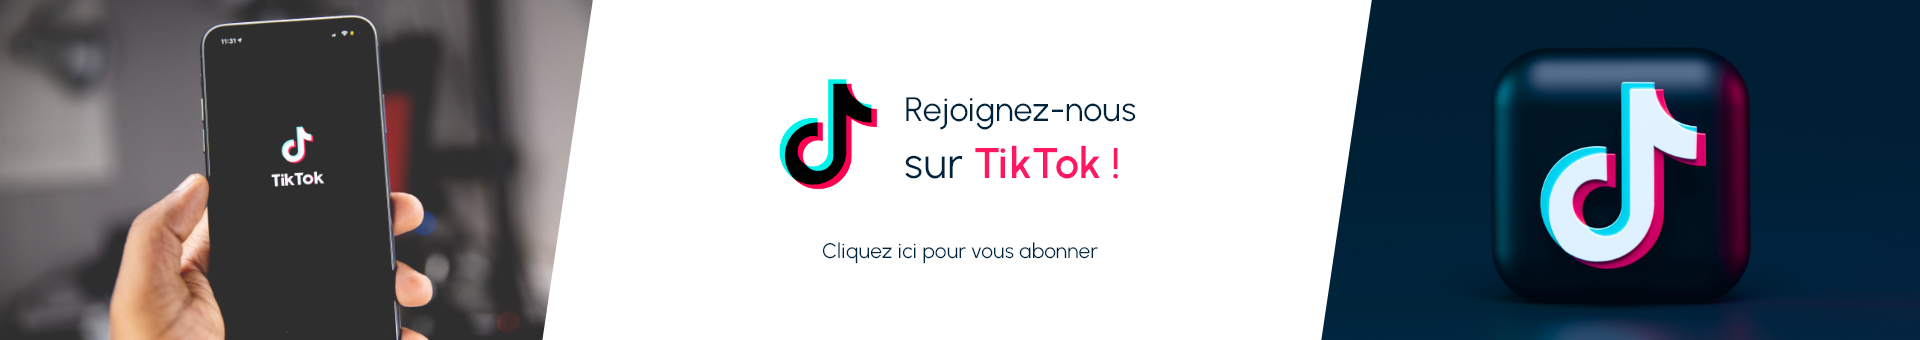 Votre pharmacie est sur TikTok, suivez-nous pour découvrir tous nos bons plans et astuces